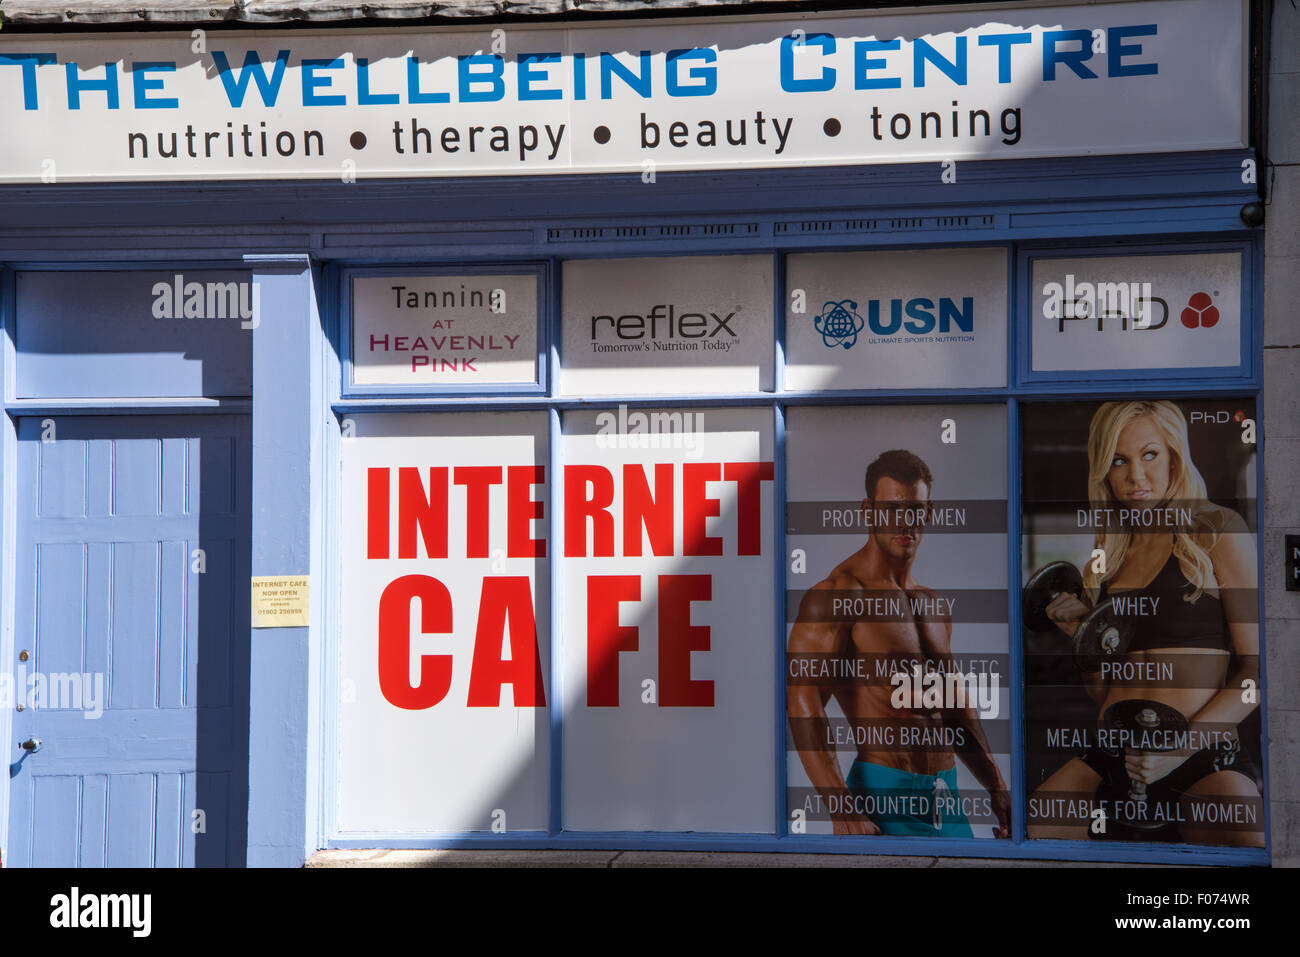 Le Centre de Bien-Être Santé, beauté, boutique de thérapie avec un café Internet sur high street Wolverhampton West Midlands, Royaume-Uni Banque D'Images